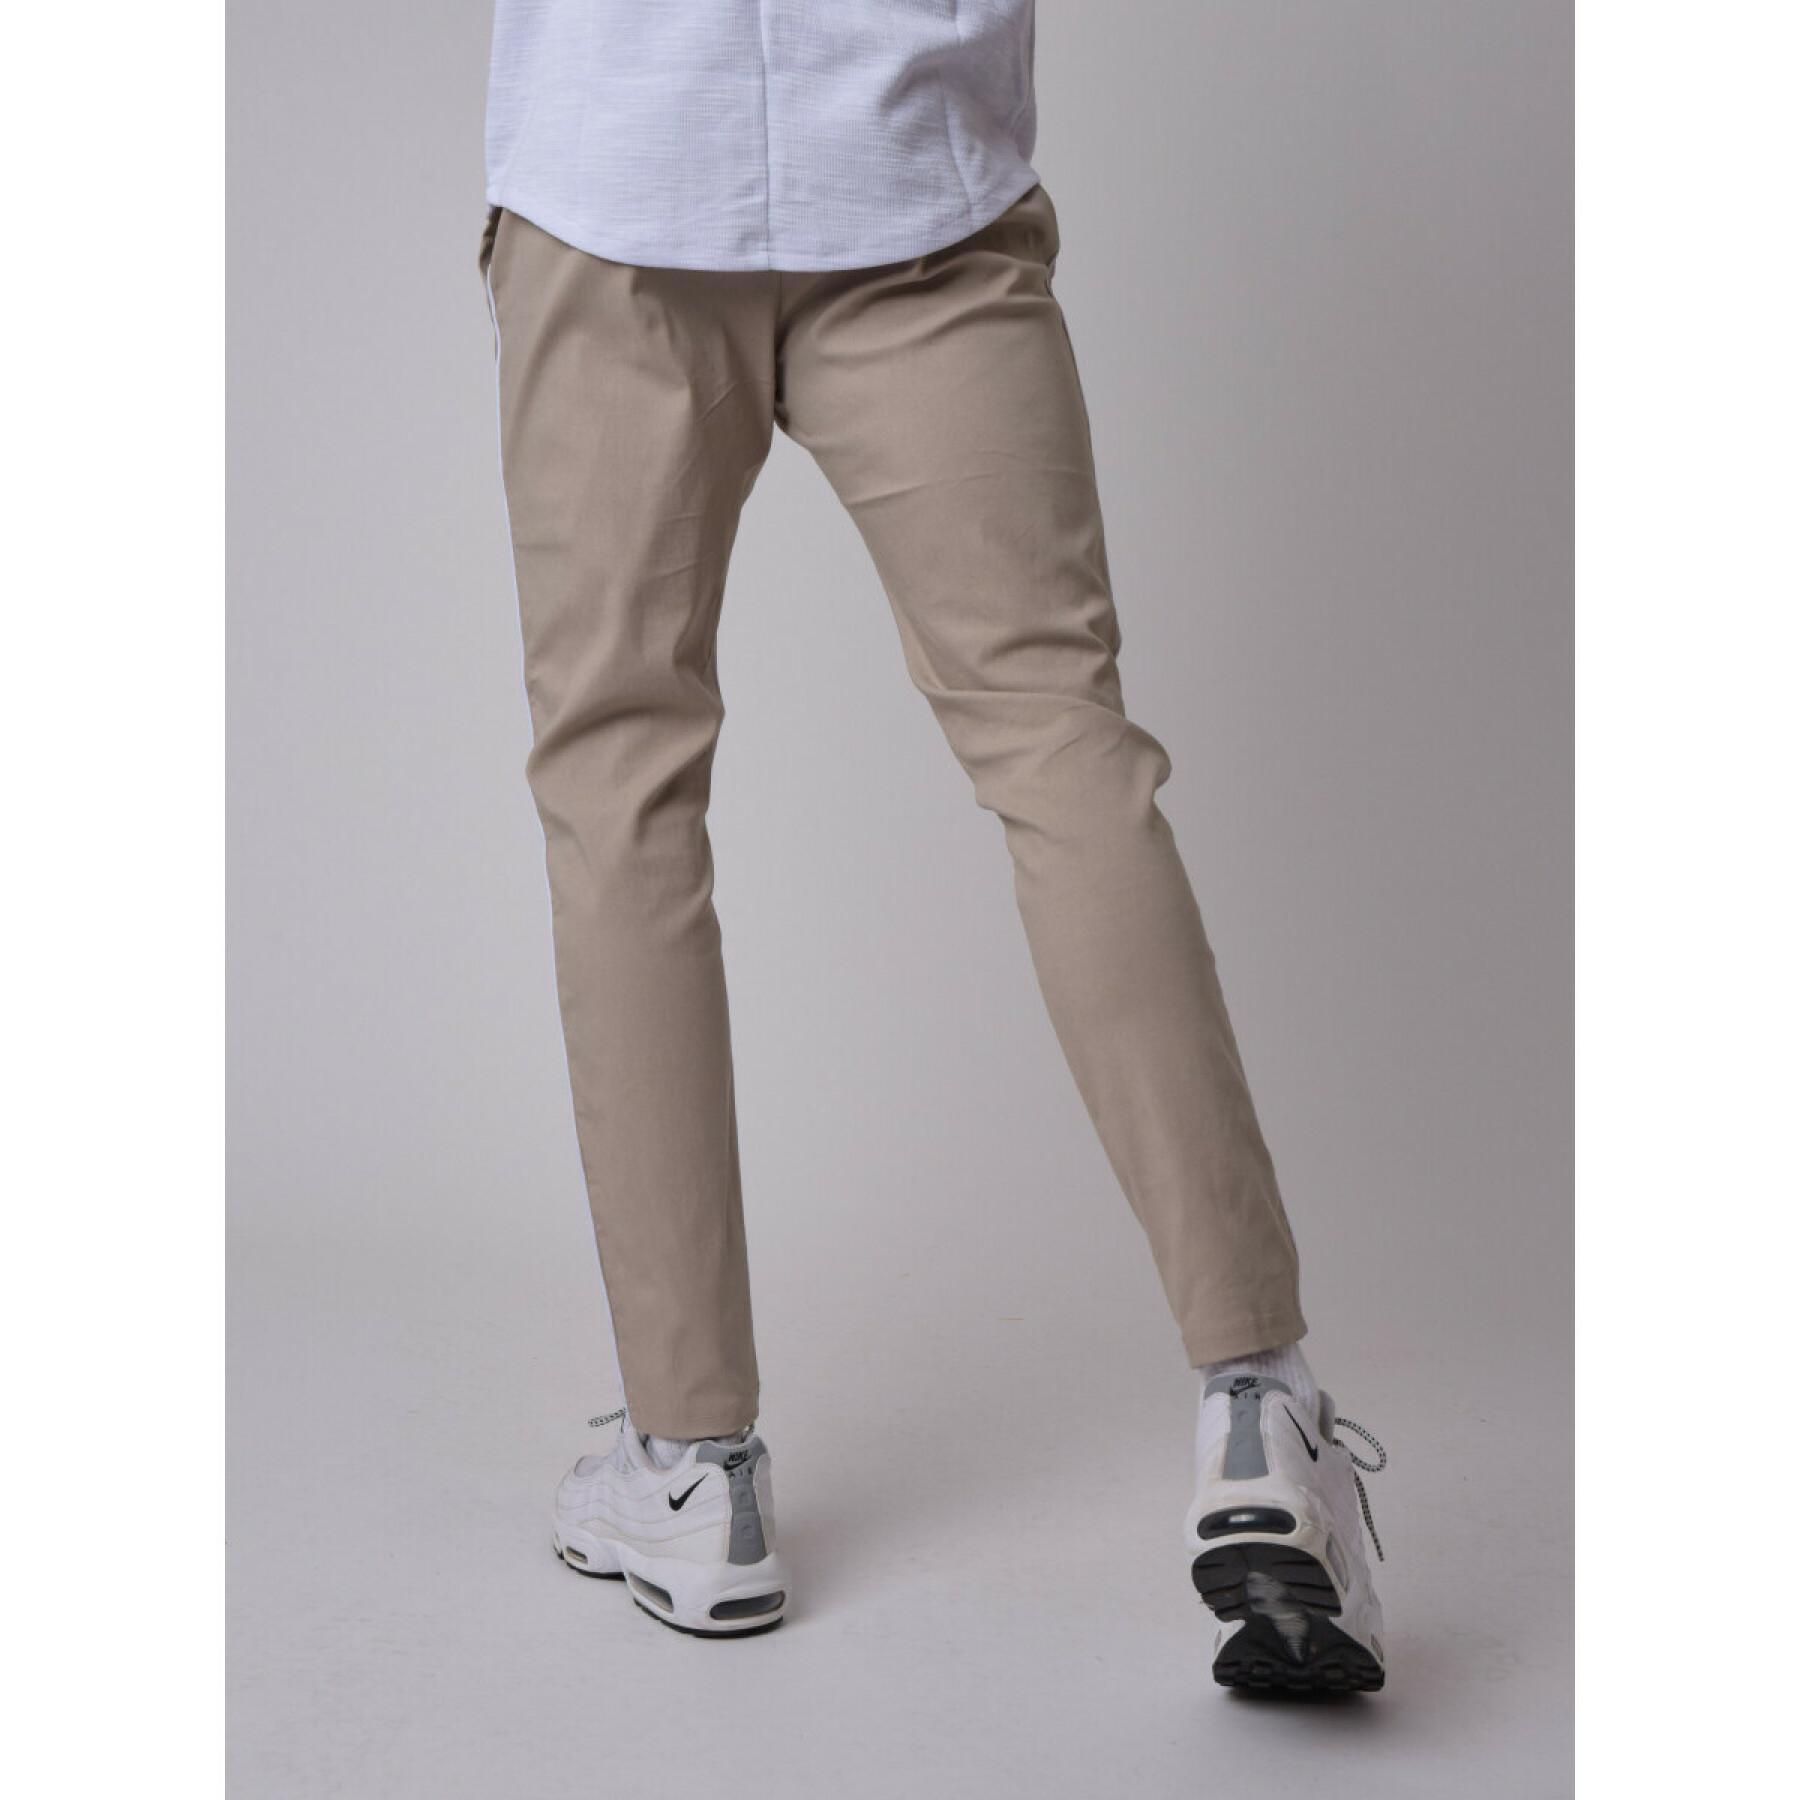 Pantalon basic cintré pipping contrasté côtés Project X Paris